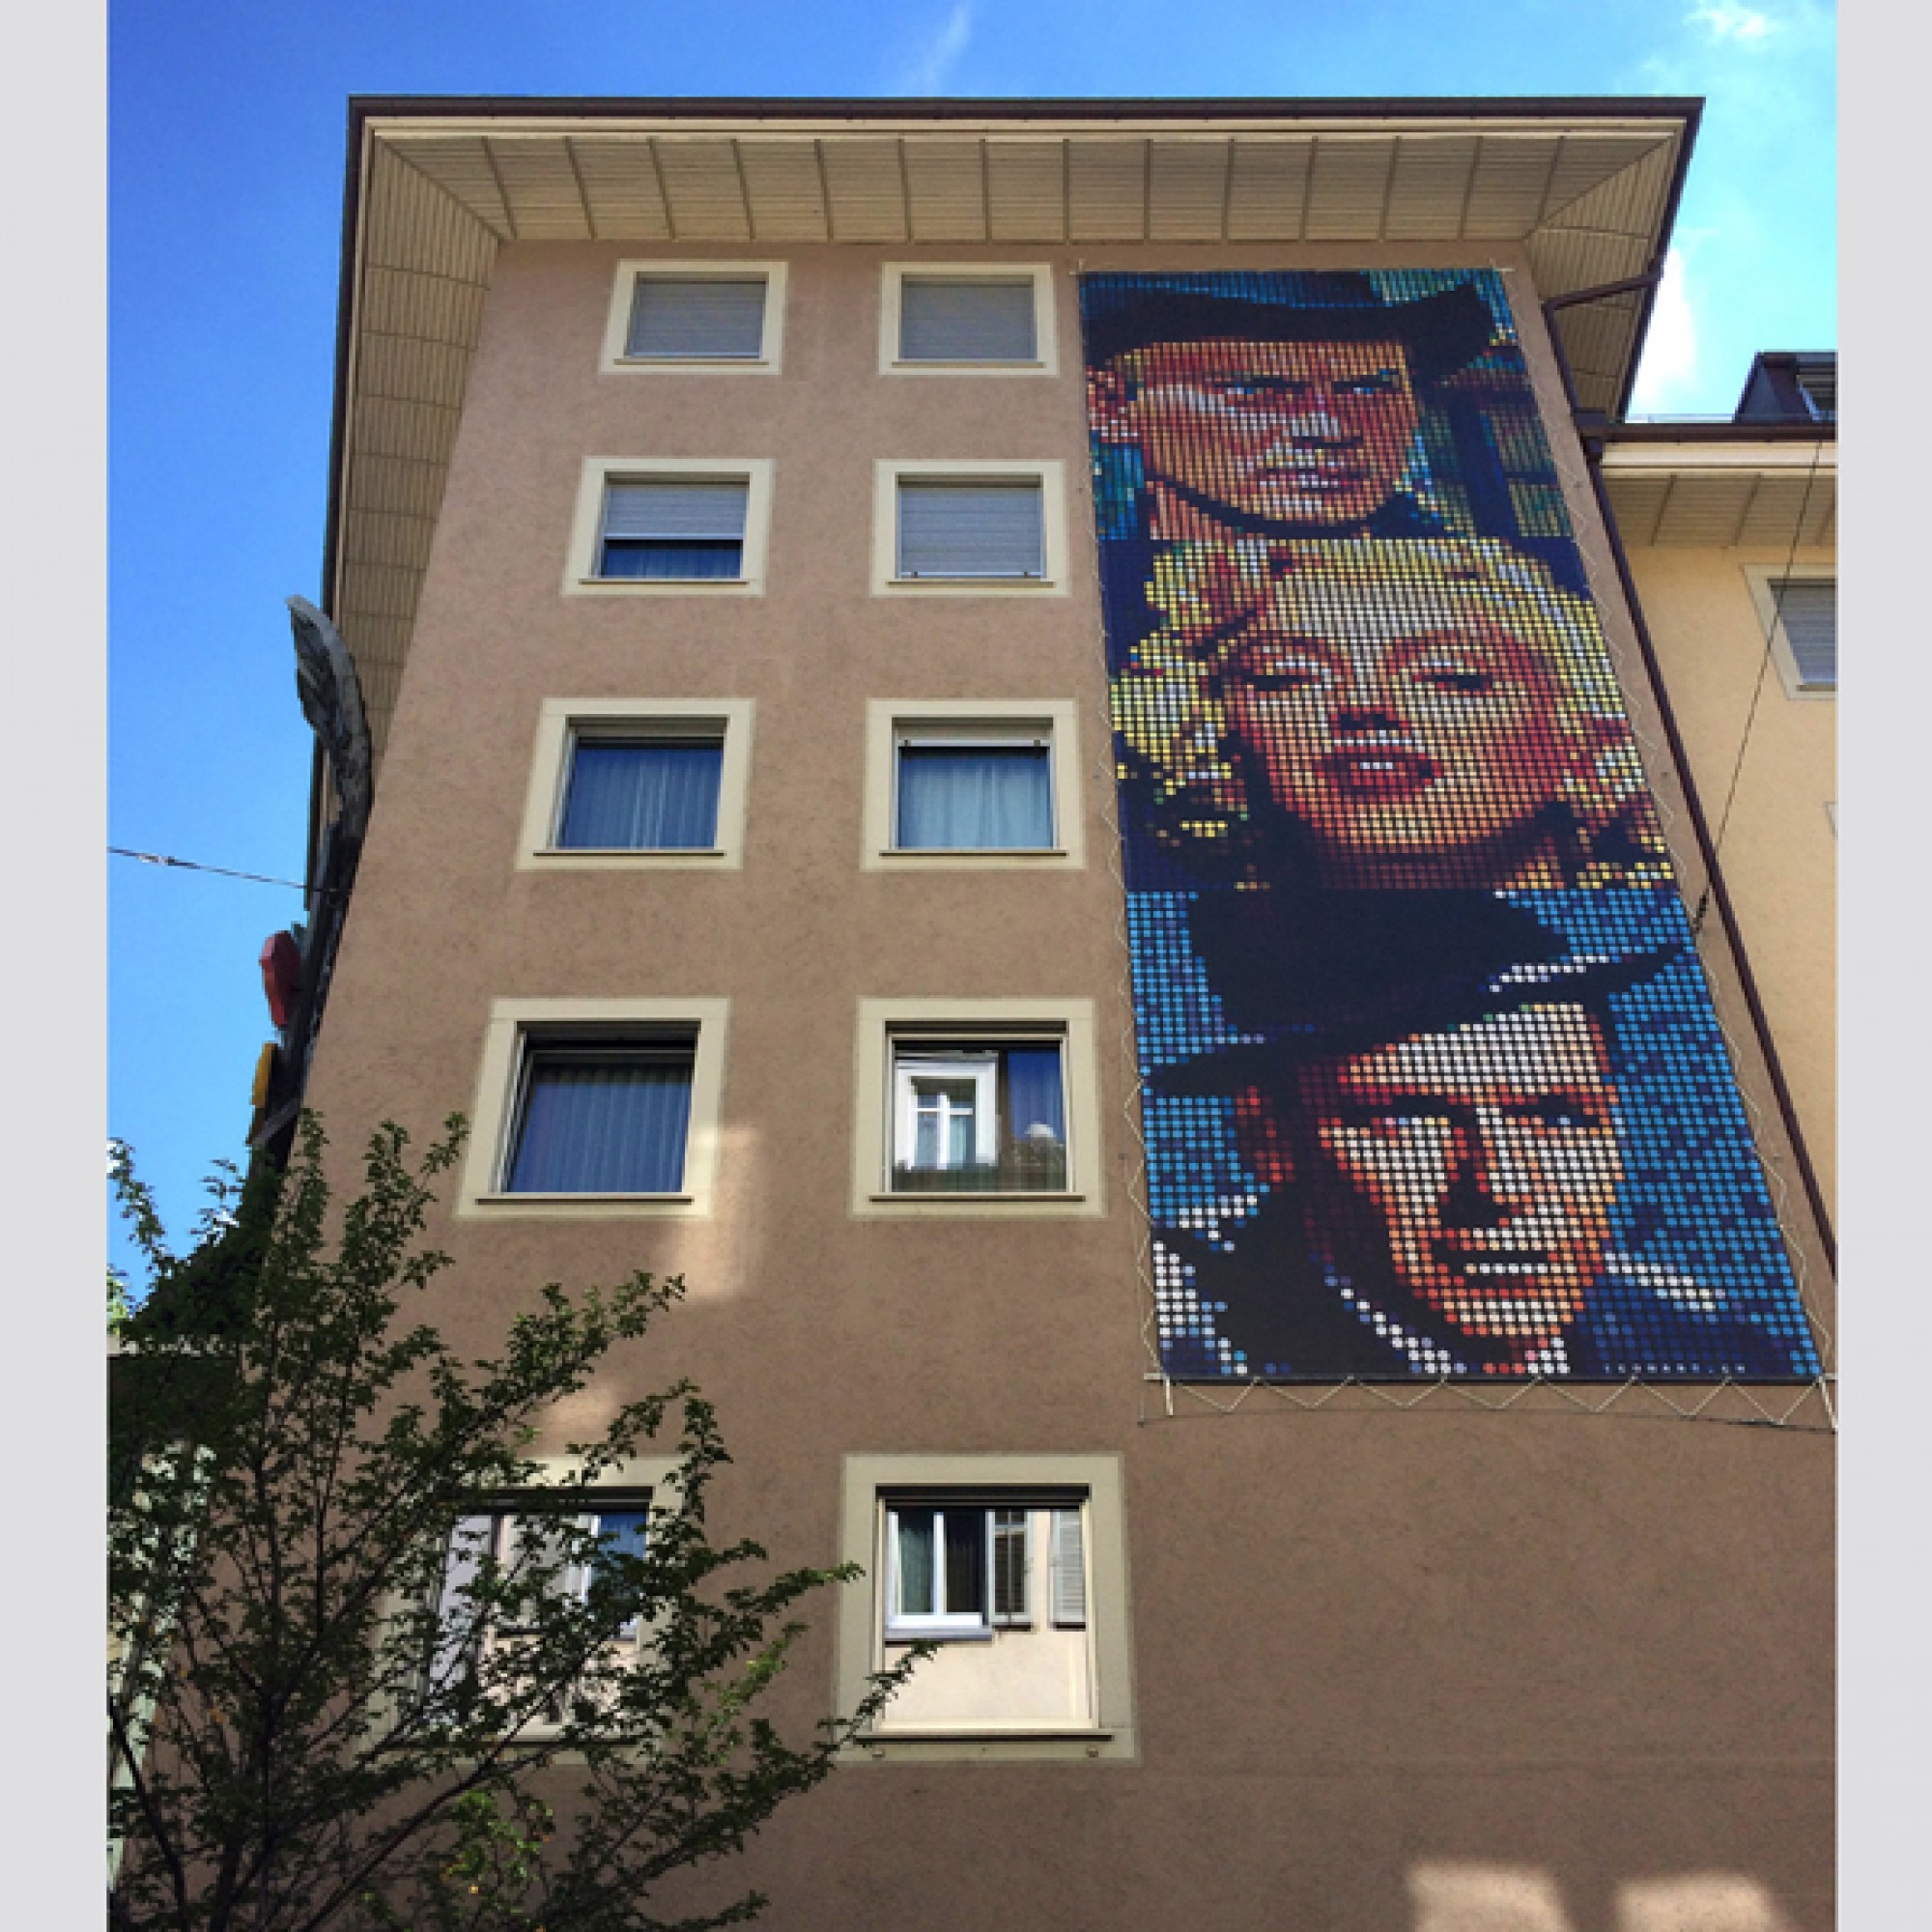 Legendäre Filmstars an der Fassade des Hotels "Du Theatre", passend zum danebenliegenden Kino. (Silva Maier)